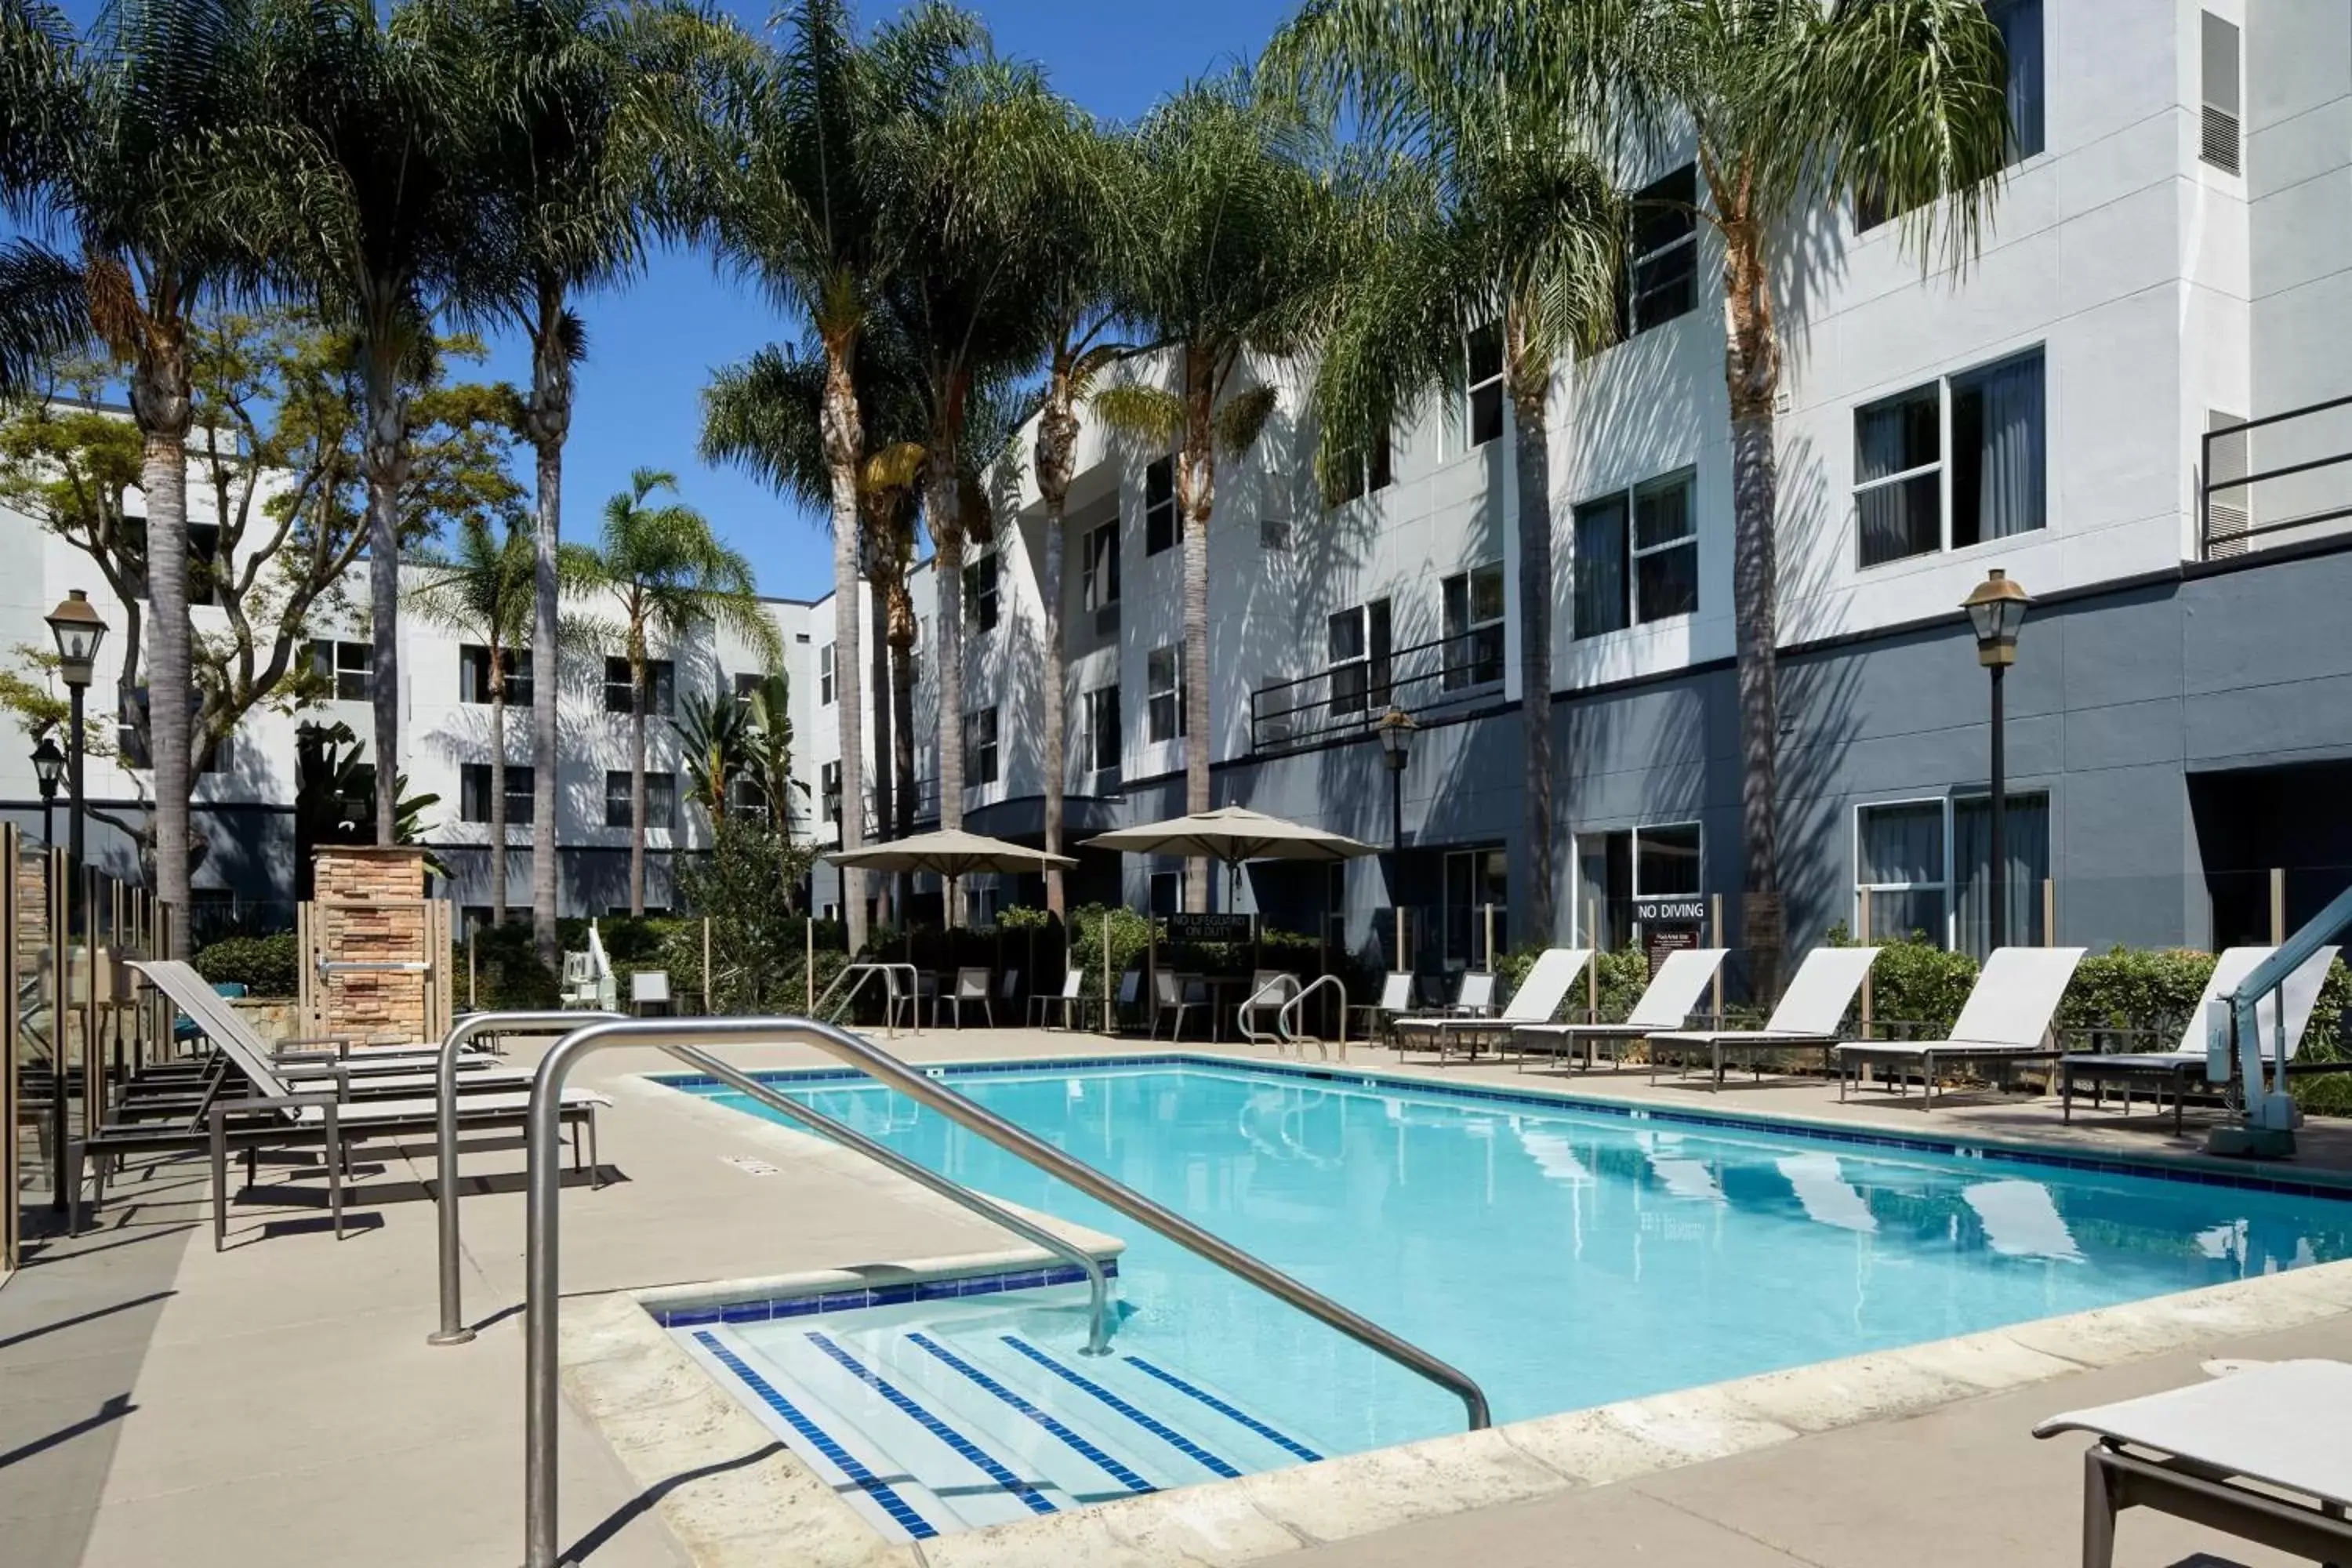 Swimming Pool in Residence Inn San Diego Carlsbad